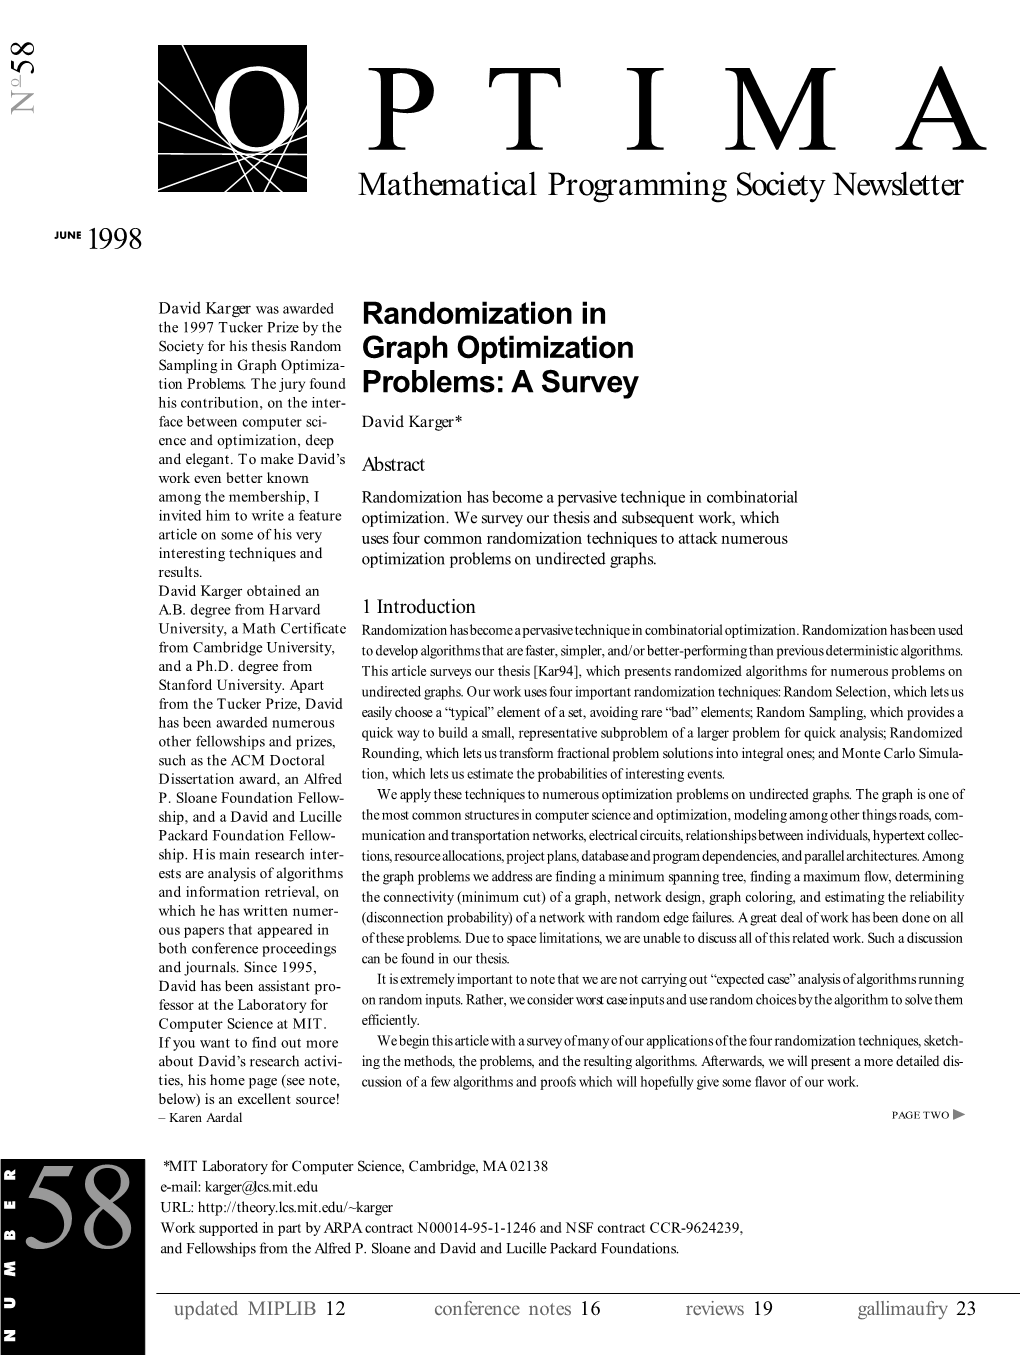 Mathematical Programming Society Newsletter Cussion Ofafewalgorithmsandproofswhichwillhopefullygivesomeflavor Ofourwork